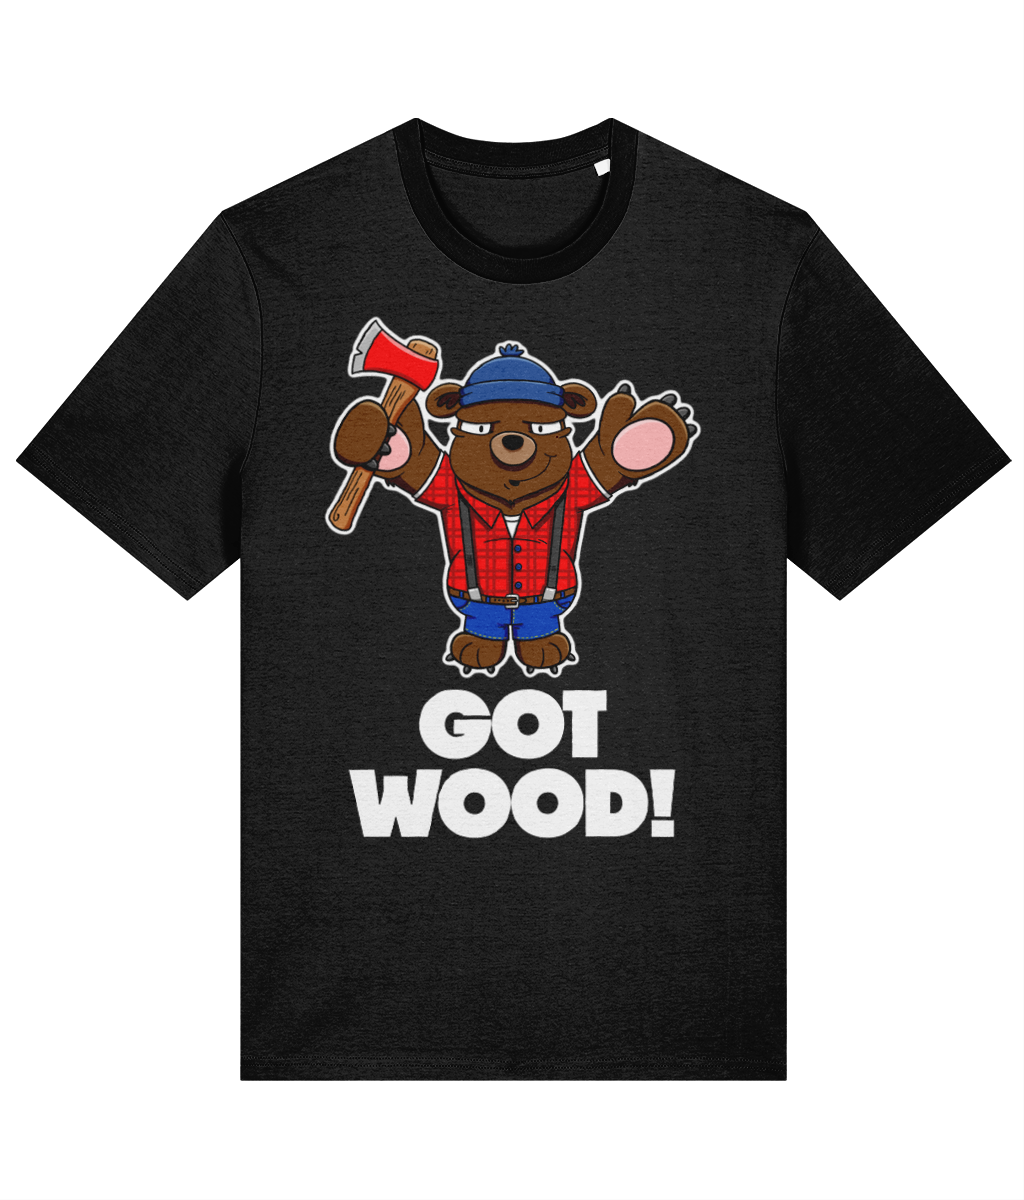 Got Wood and an Axe T-Shirt